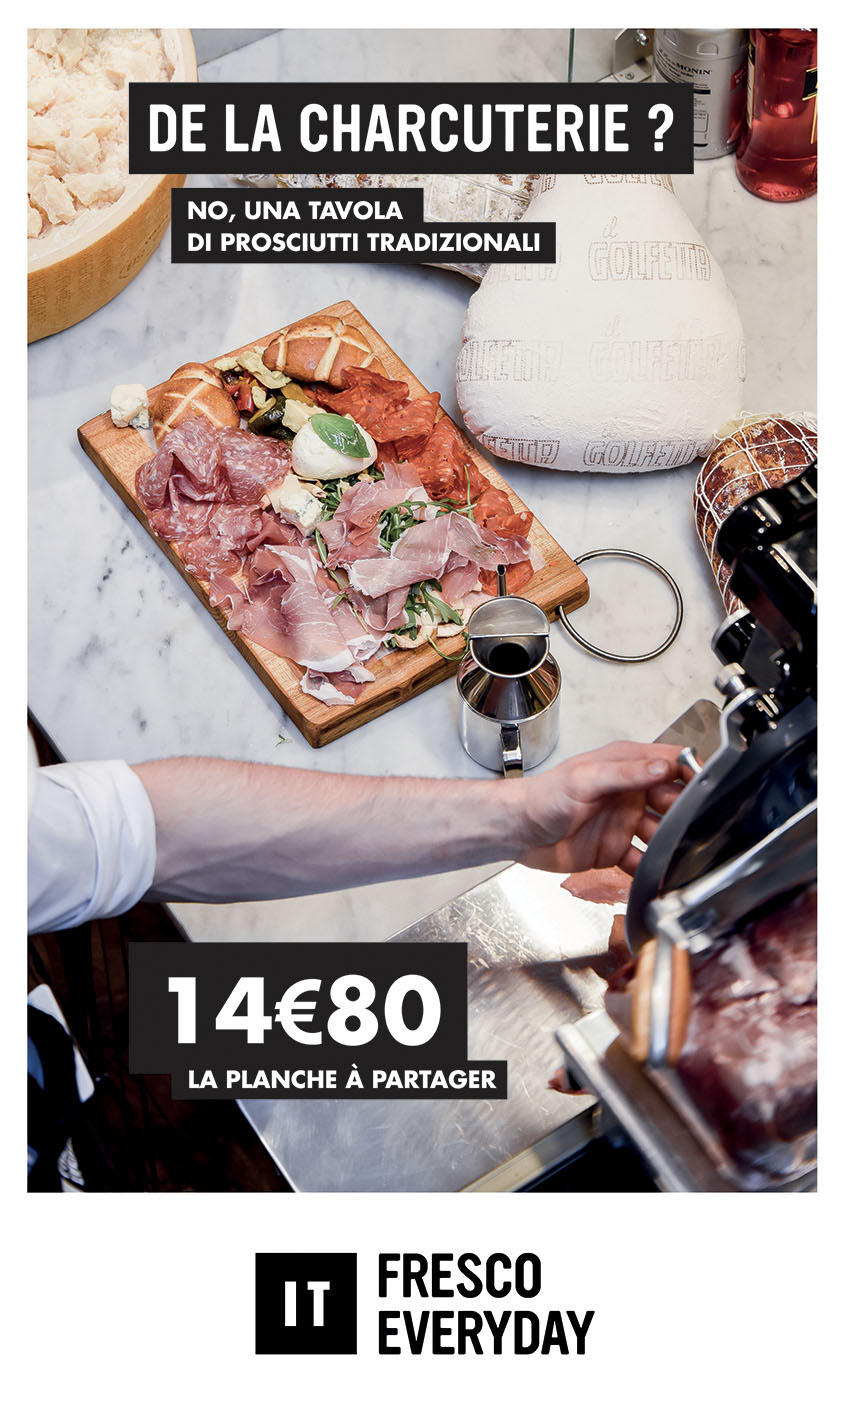 IT trattoria - Photos Laurent Scavone. Restaurants italiens communication & stratégie Sakkamoto